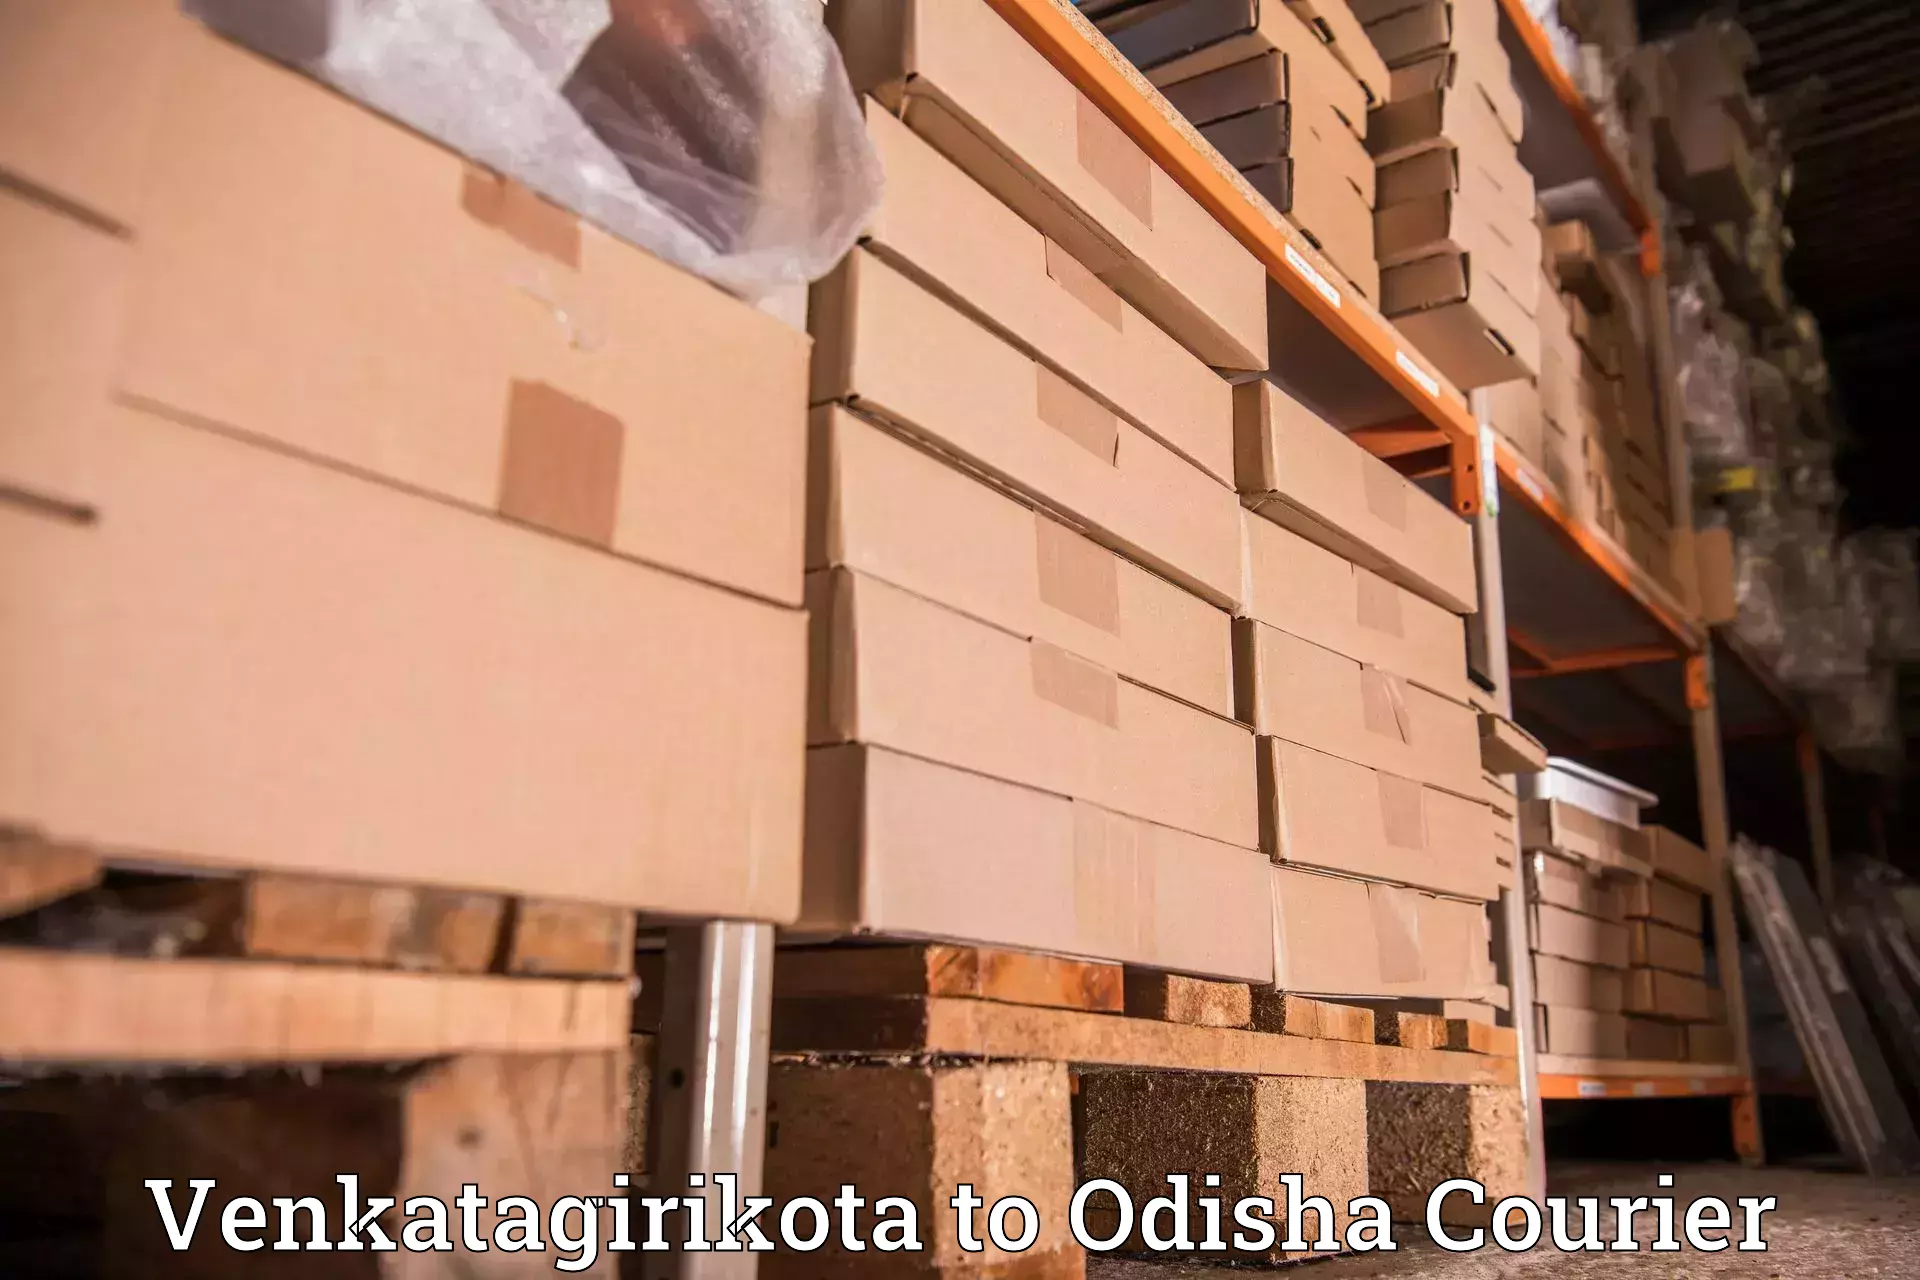 Professional courier handling Venkatagirikota to Gumadera